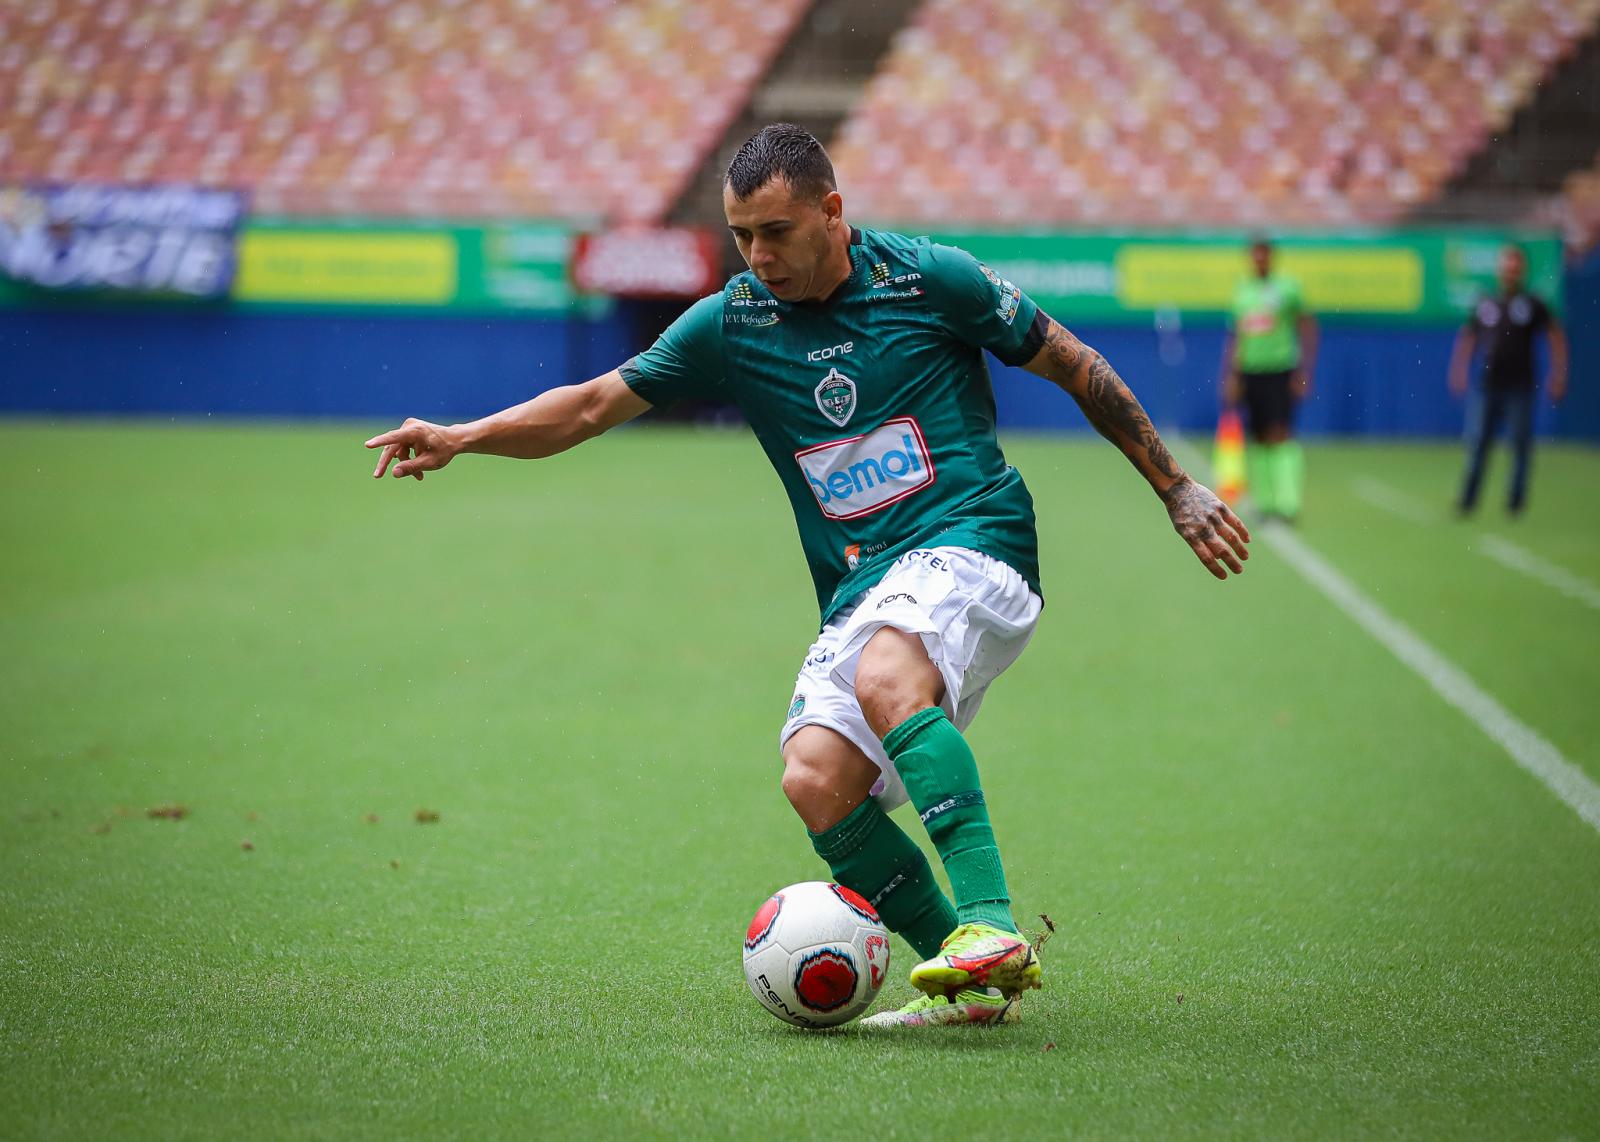 Serviço de jogo | Manaus vs Amazonas | terceira rodada Barezão 2022